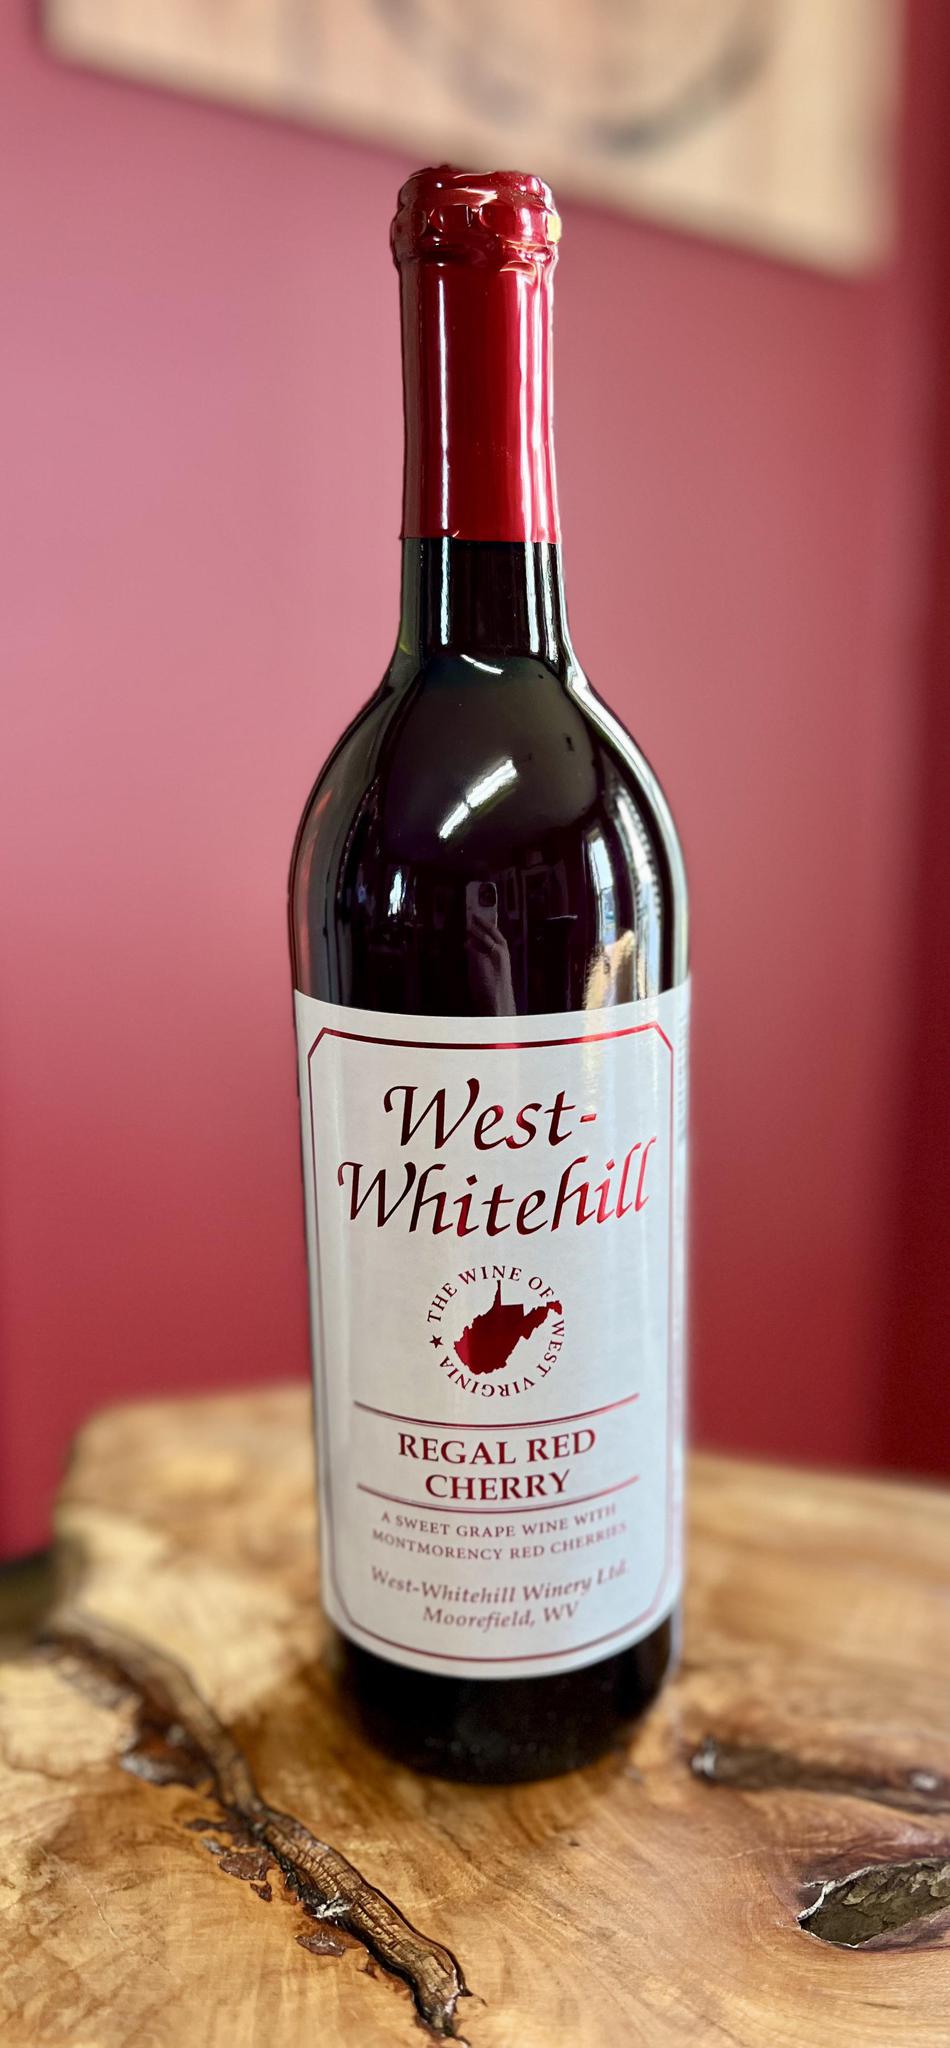 West Whitehill Regal Red Cherry Wine